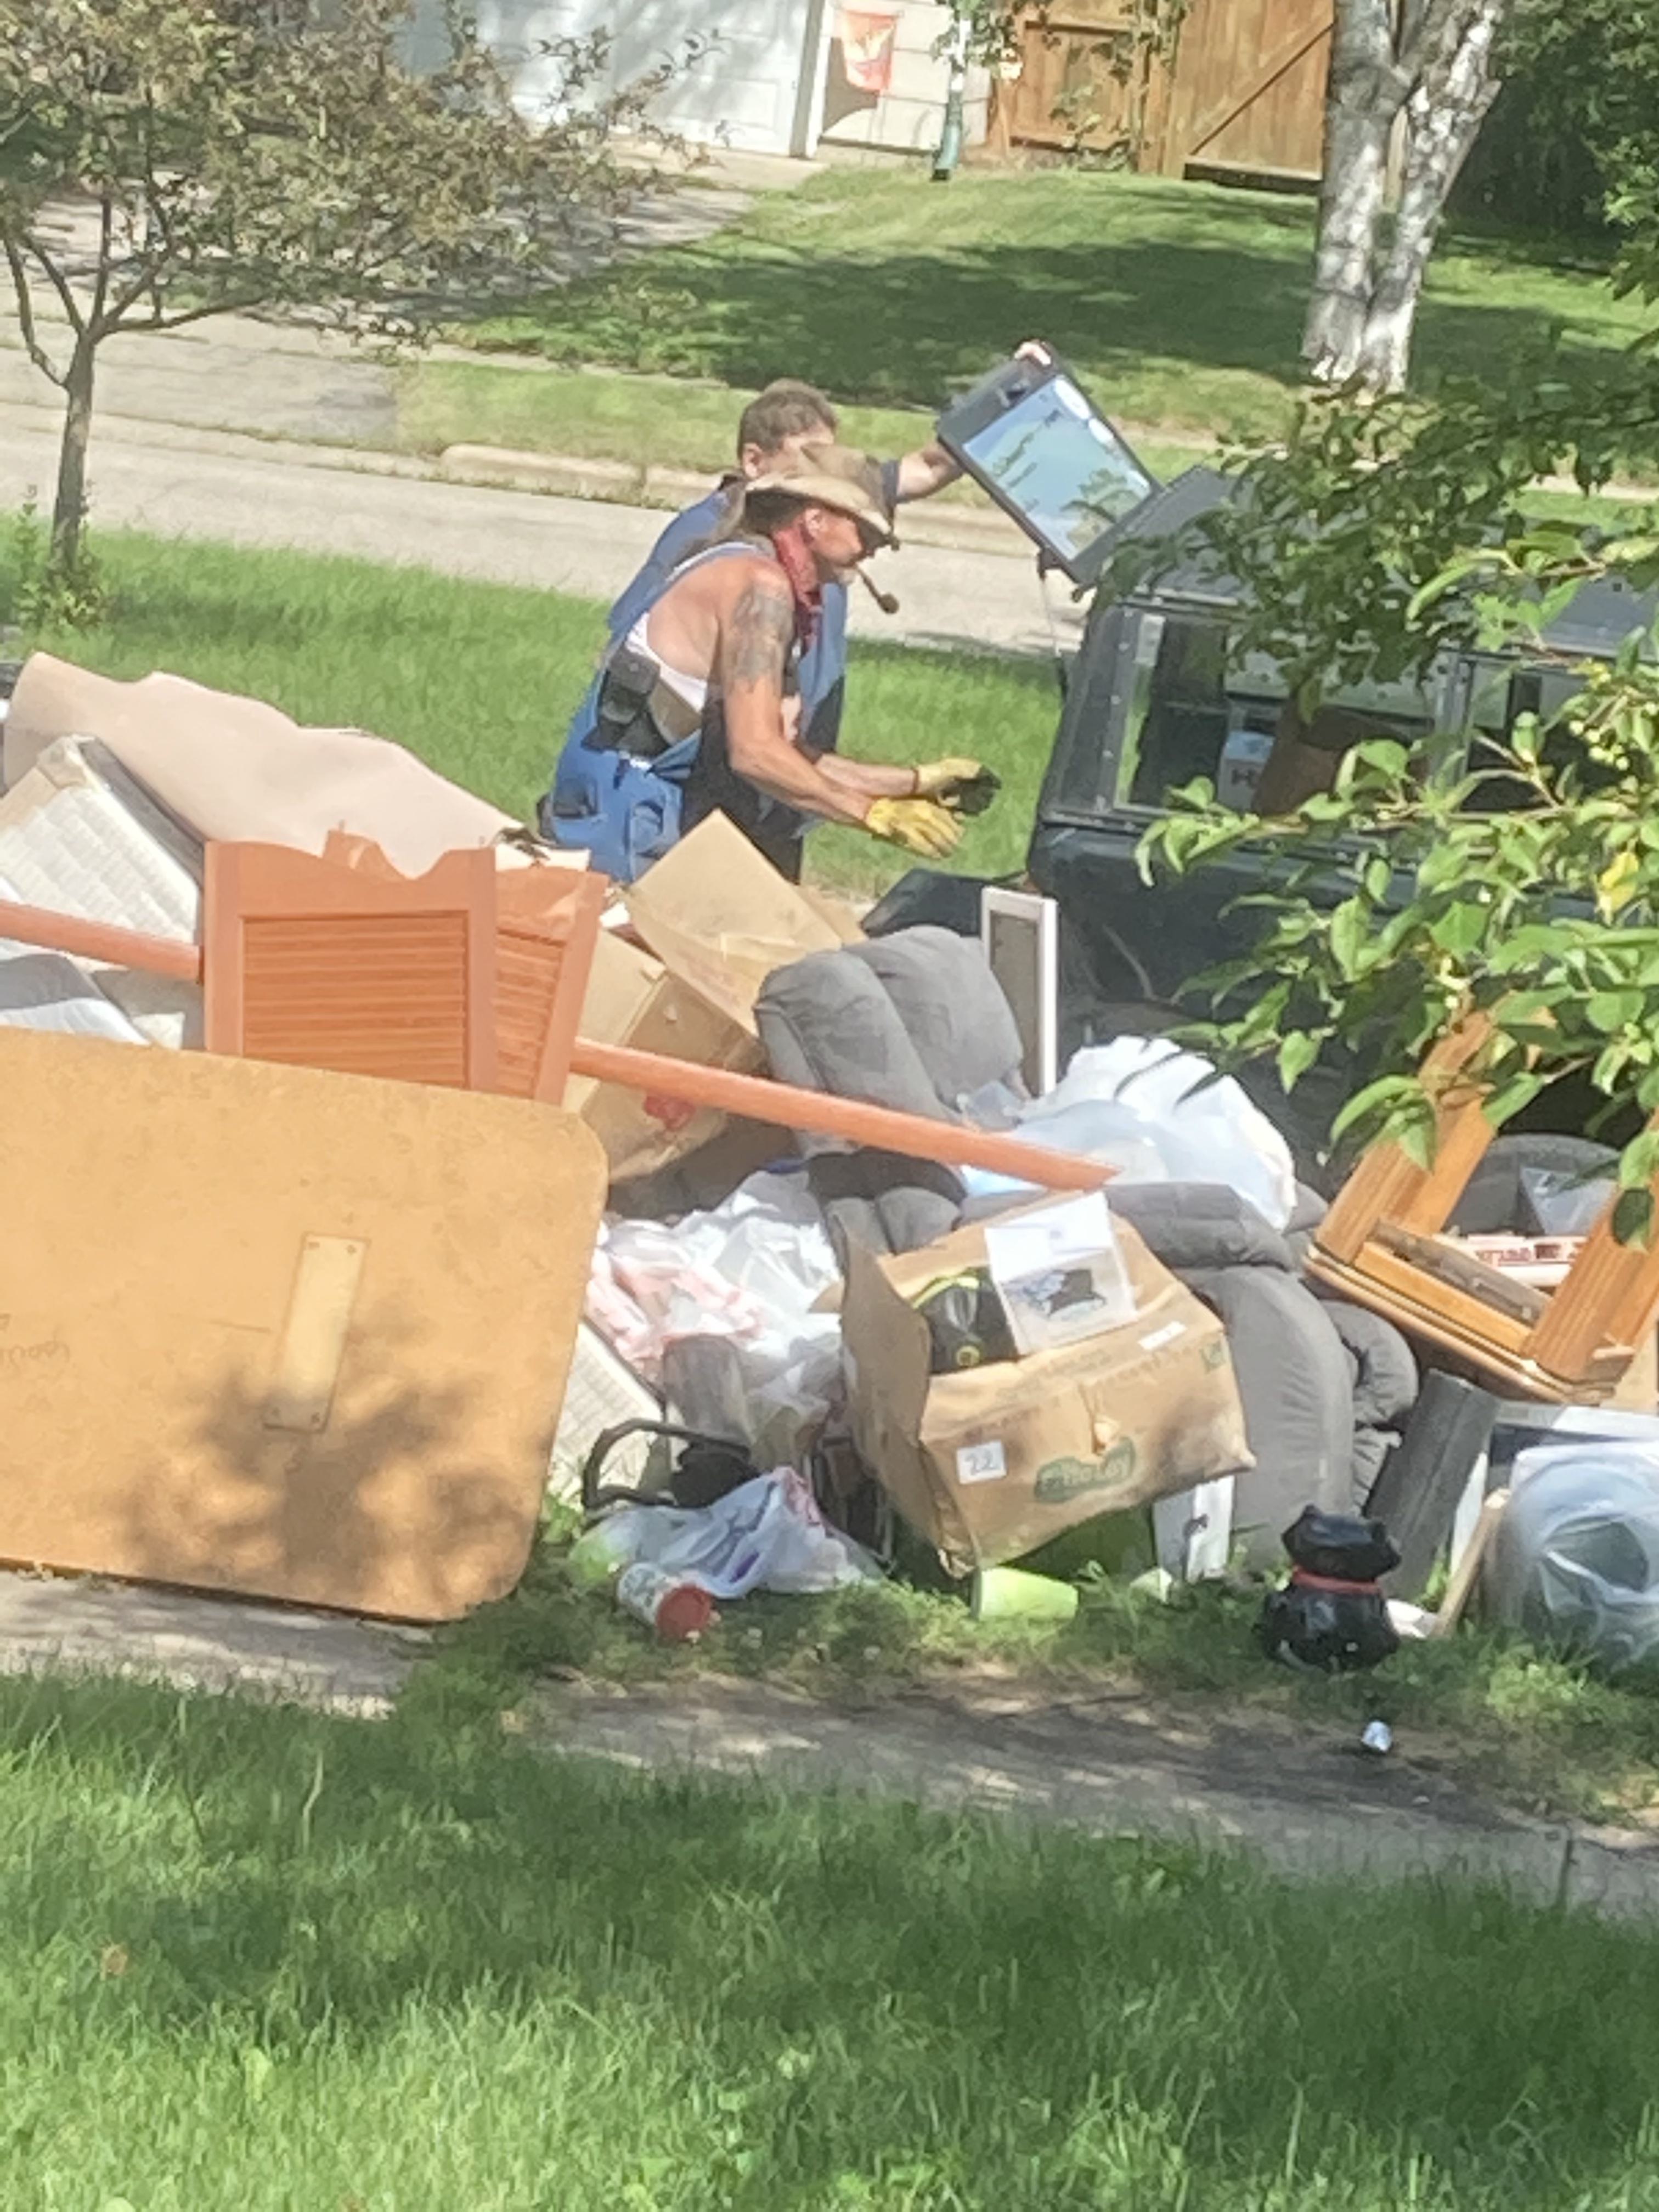 Strange man taking from our garbage